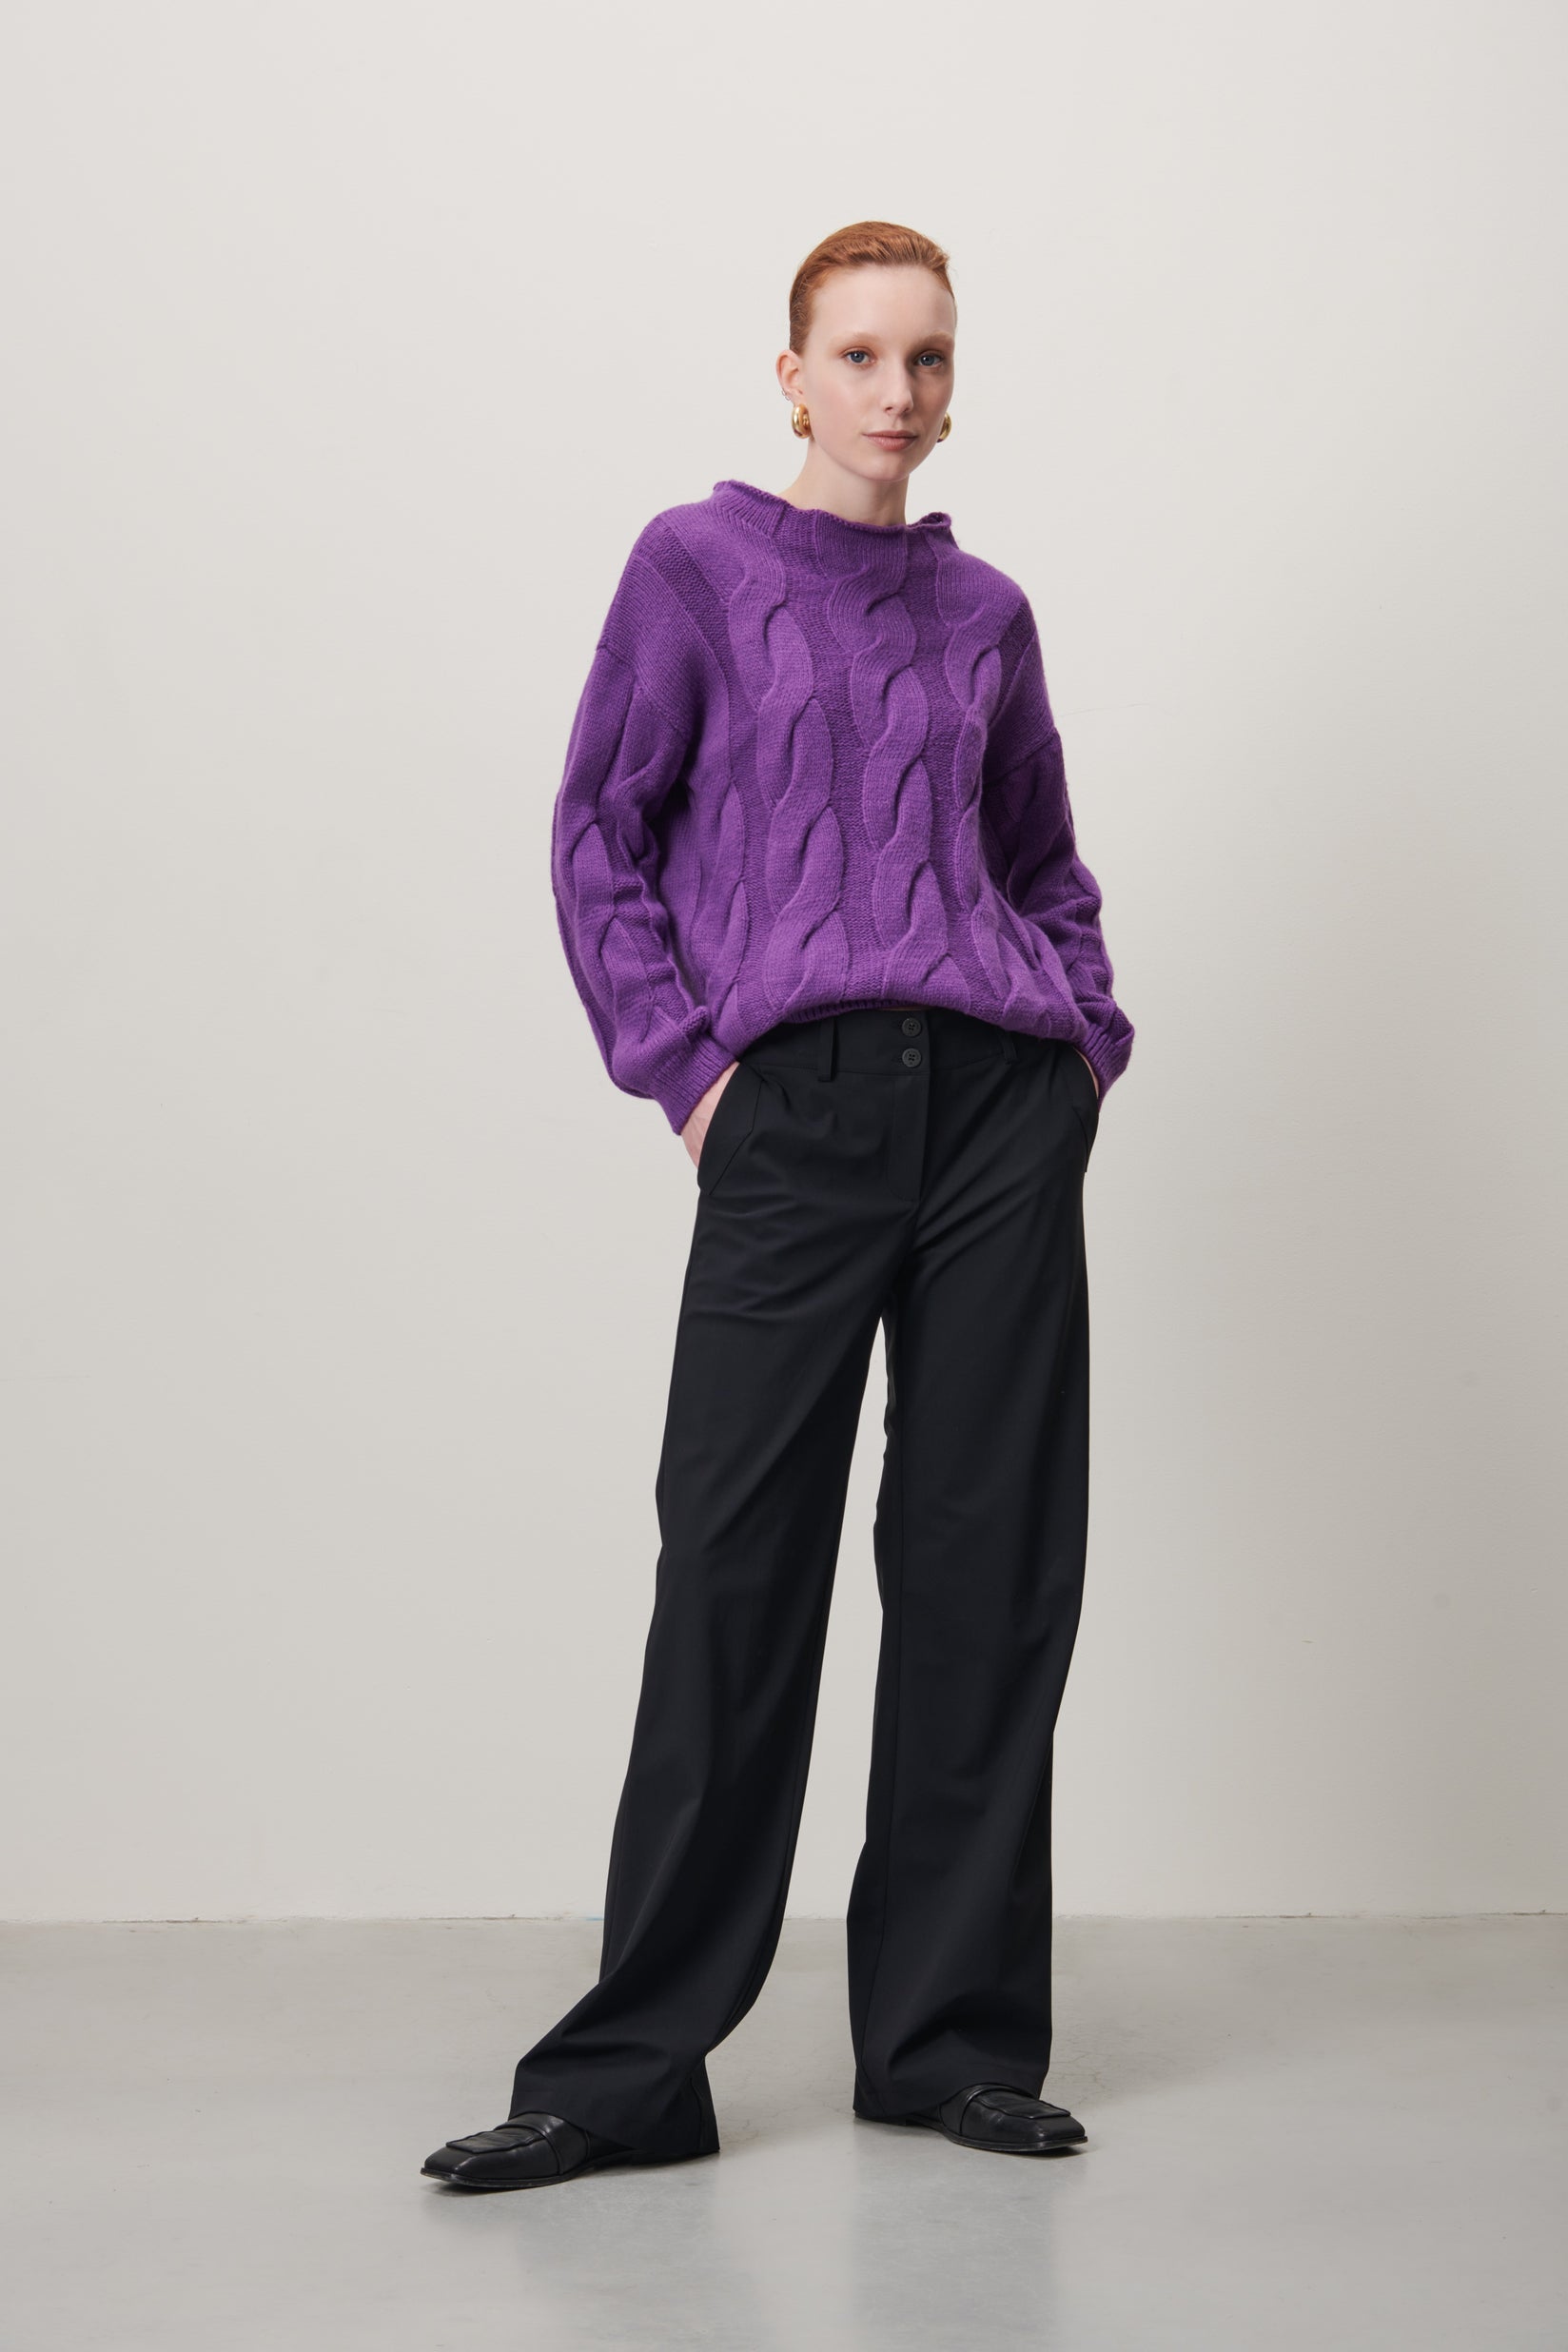 Ciiva Paddington Pullover | Purple